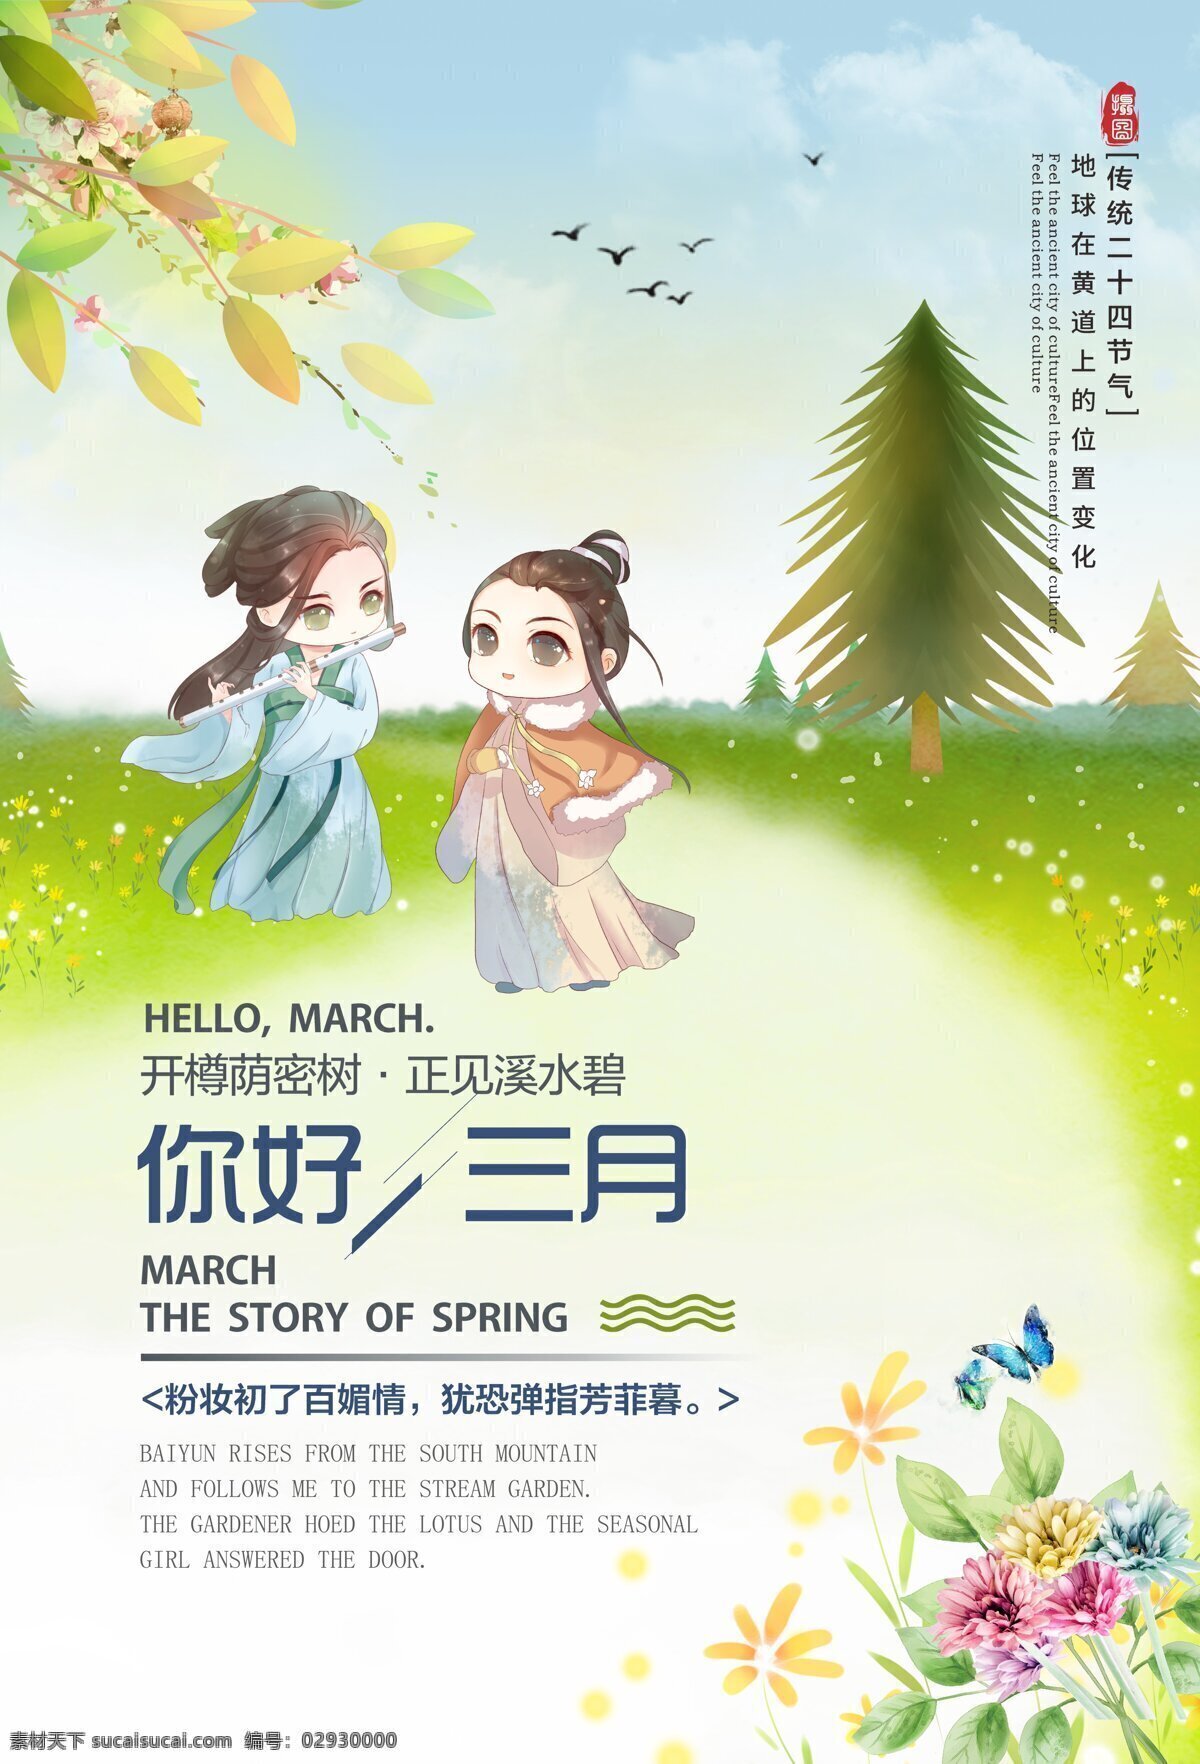 中国 风 月份 三月 你好 窗外 海报 春天 3月你好 你好三月 月份海报 矢量海报 三月你好 你好海报 中国风 节日海报